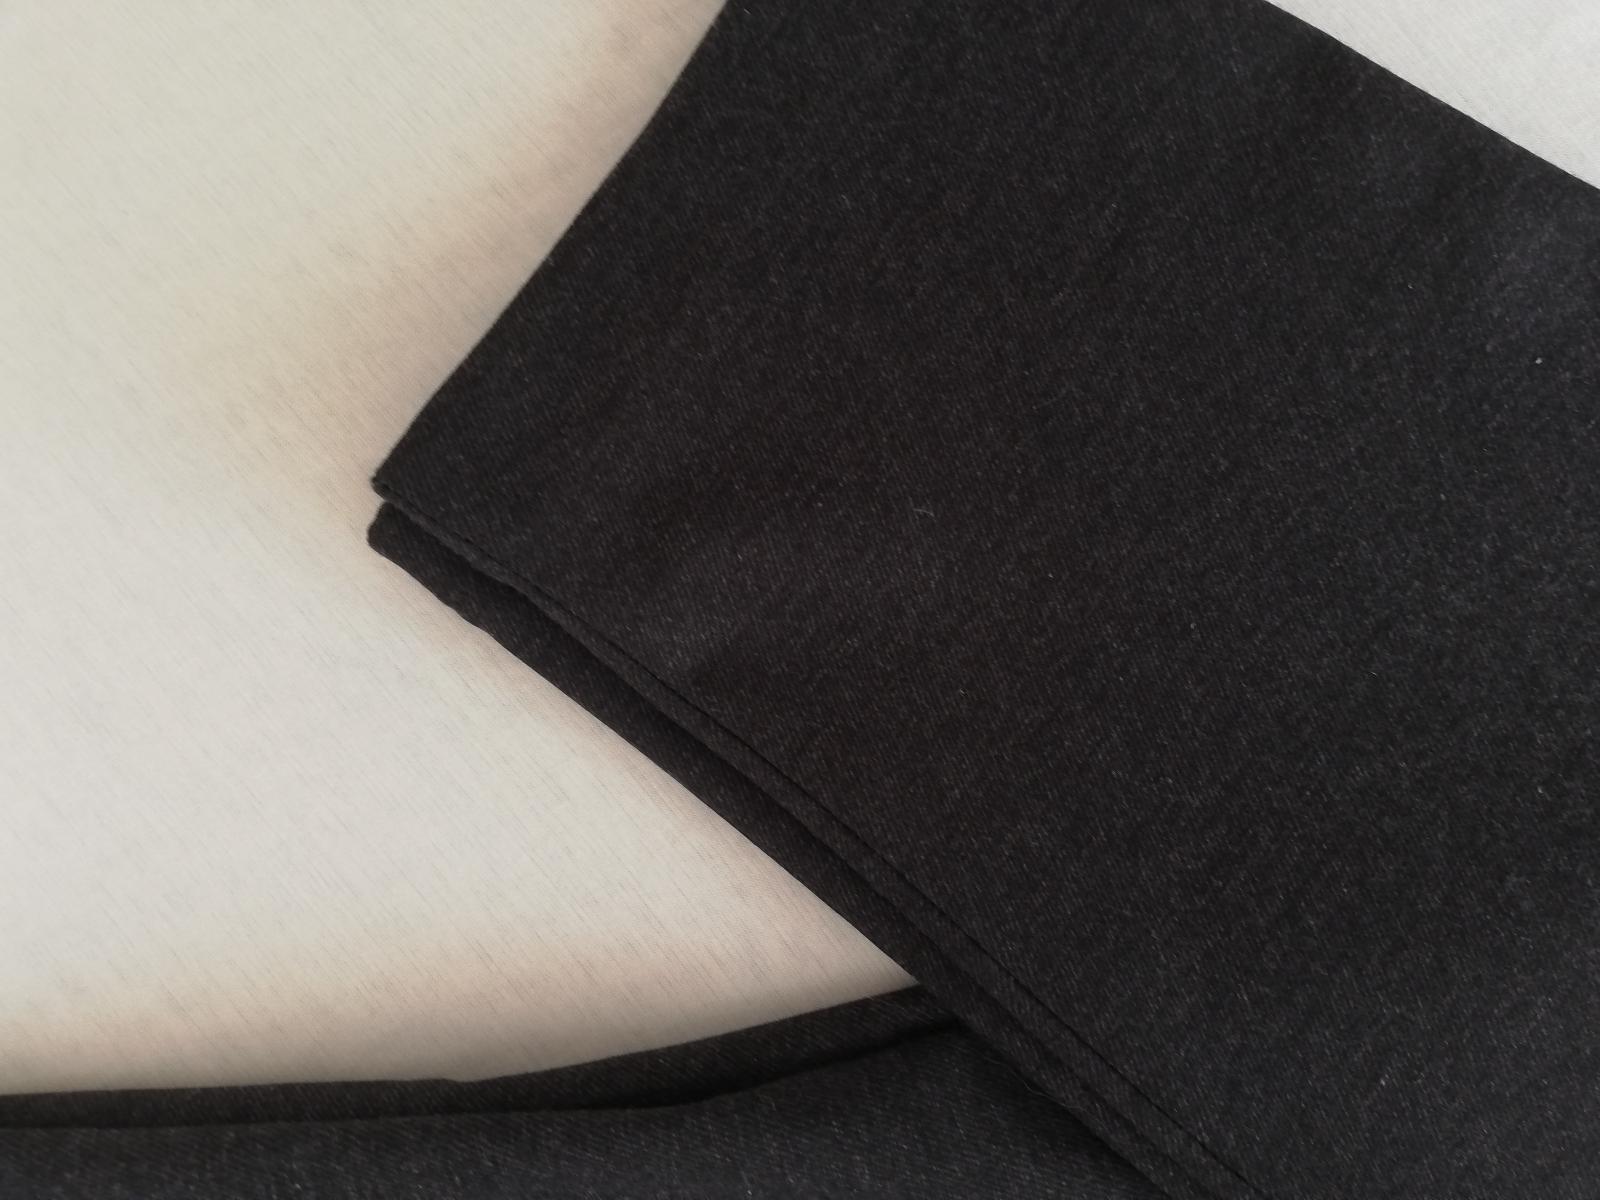 Matínique-Pánské šedé, teplé slim fit kalhoty z úpletového mat.W33/L32 - Pánské oblečení